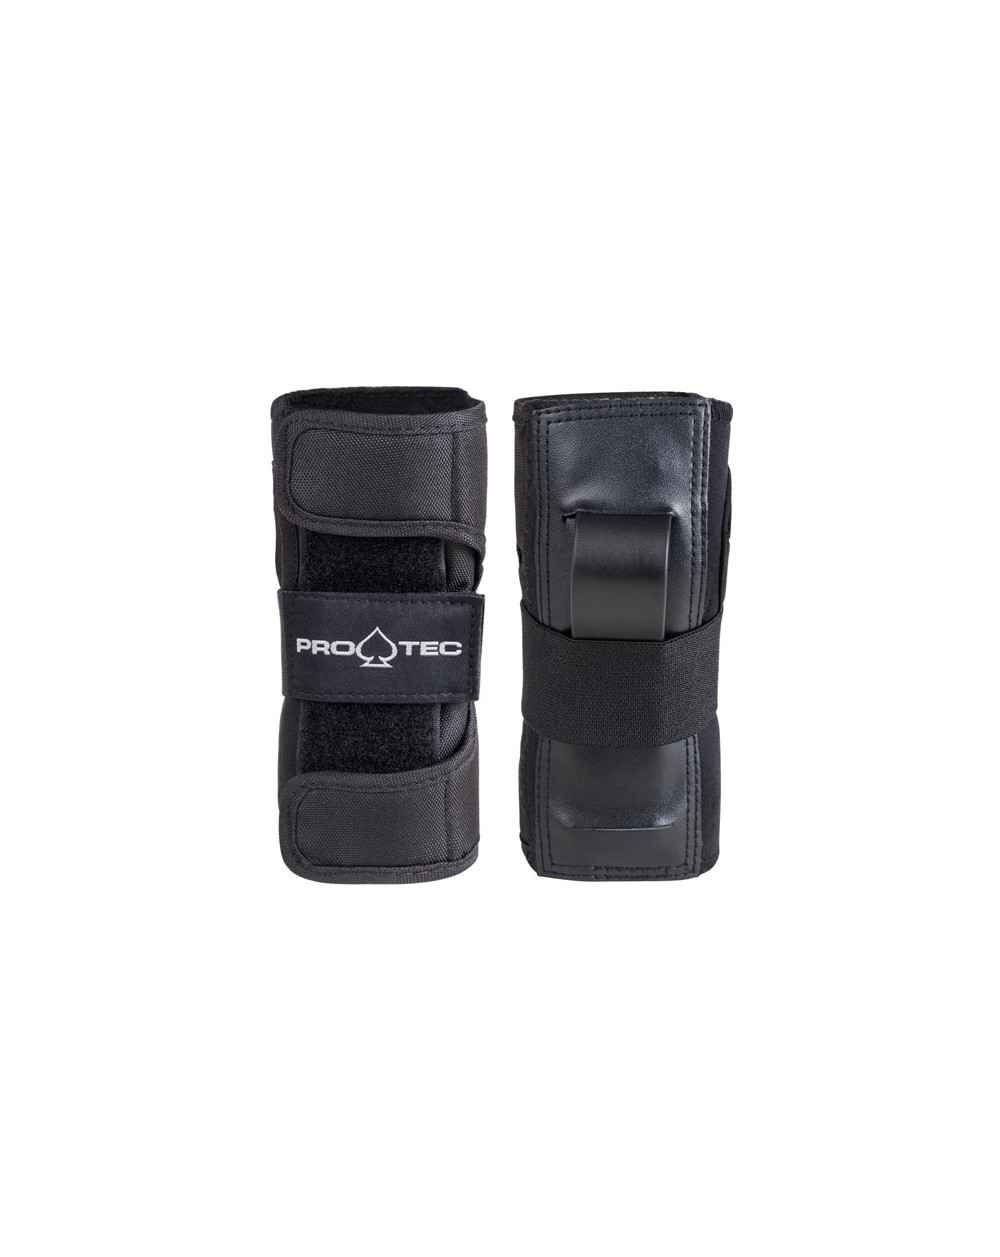 Pro-Tec Wrist Guard - Protecciones